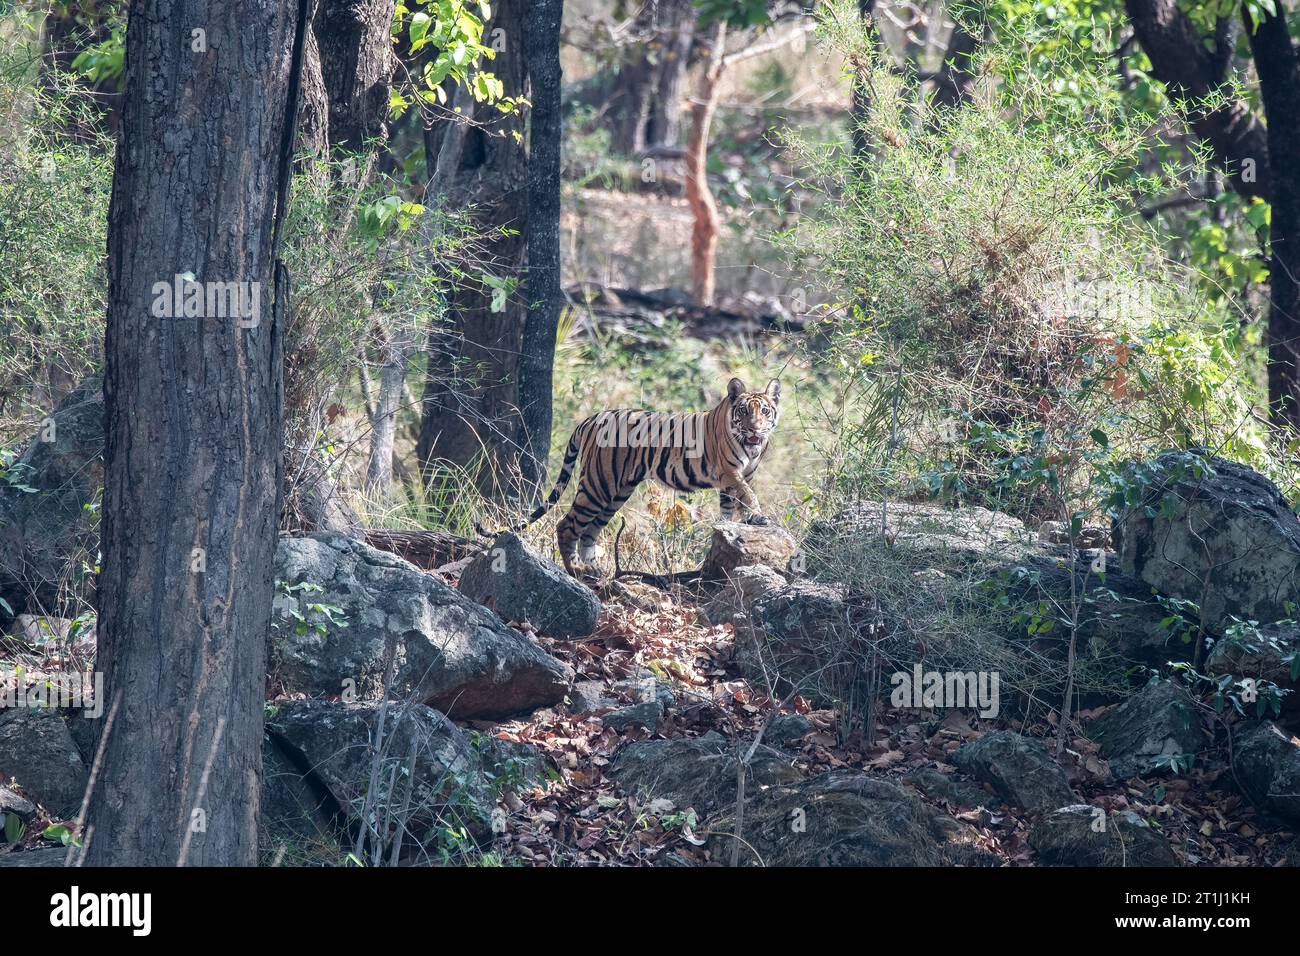 Un tigre subadulte marchant vers le point d'eau par une chaude après-midi d'été à l'intérieur de Bandhavgarh Tiger Reserve pendant le safari Banque D'Images